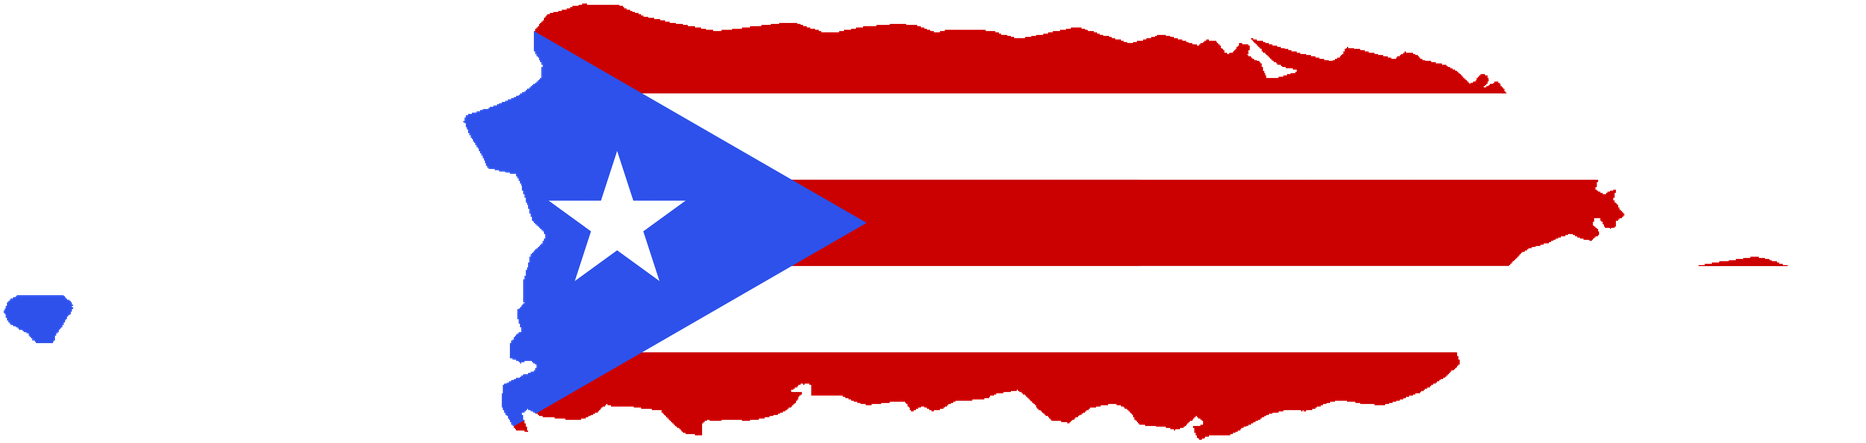 Bandera De Puerto Rico Png - Puerto Rico Map Png Clipart (1920x460), Png Download